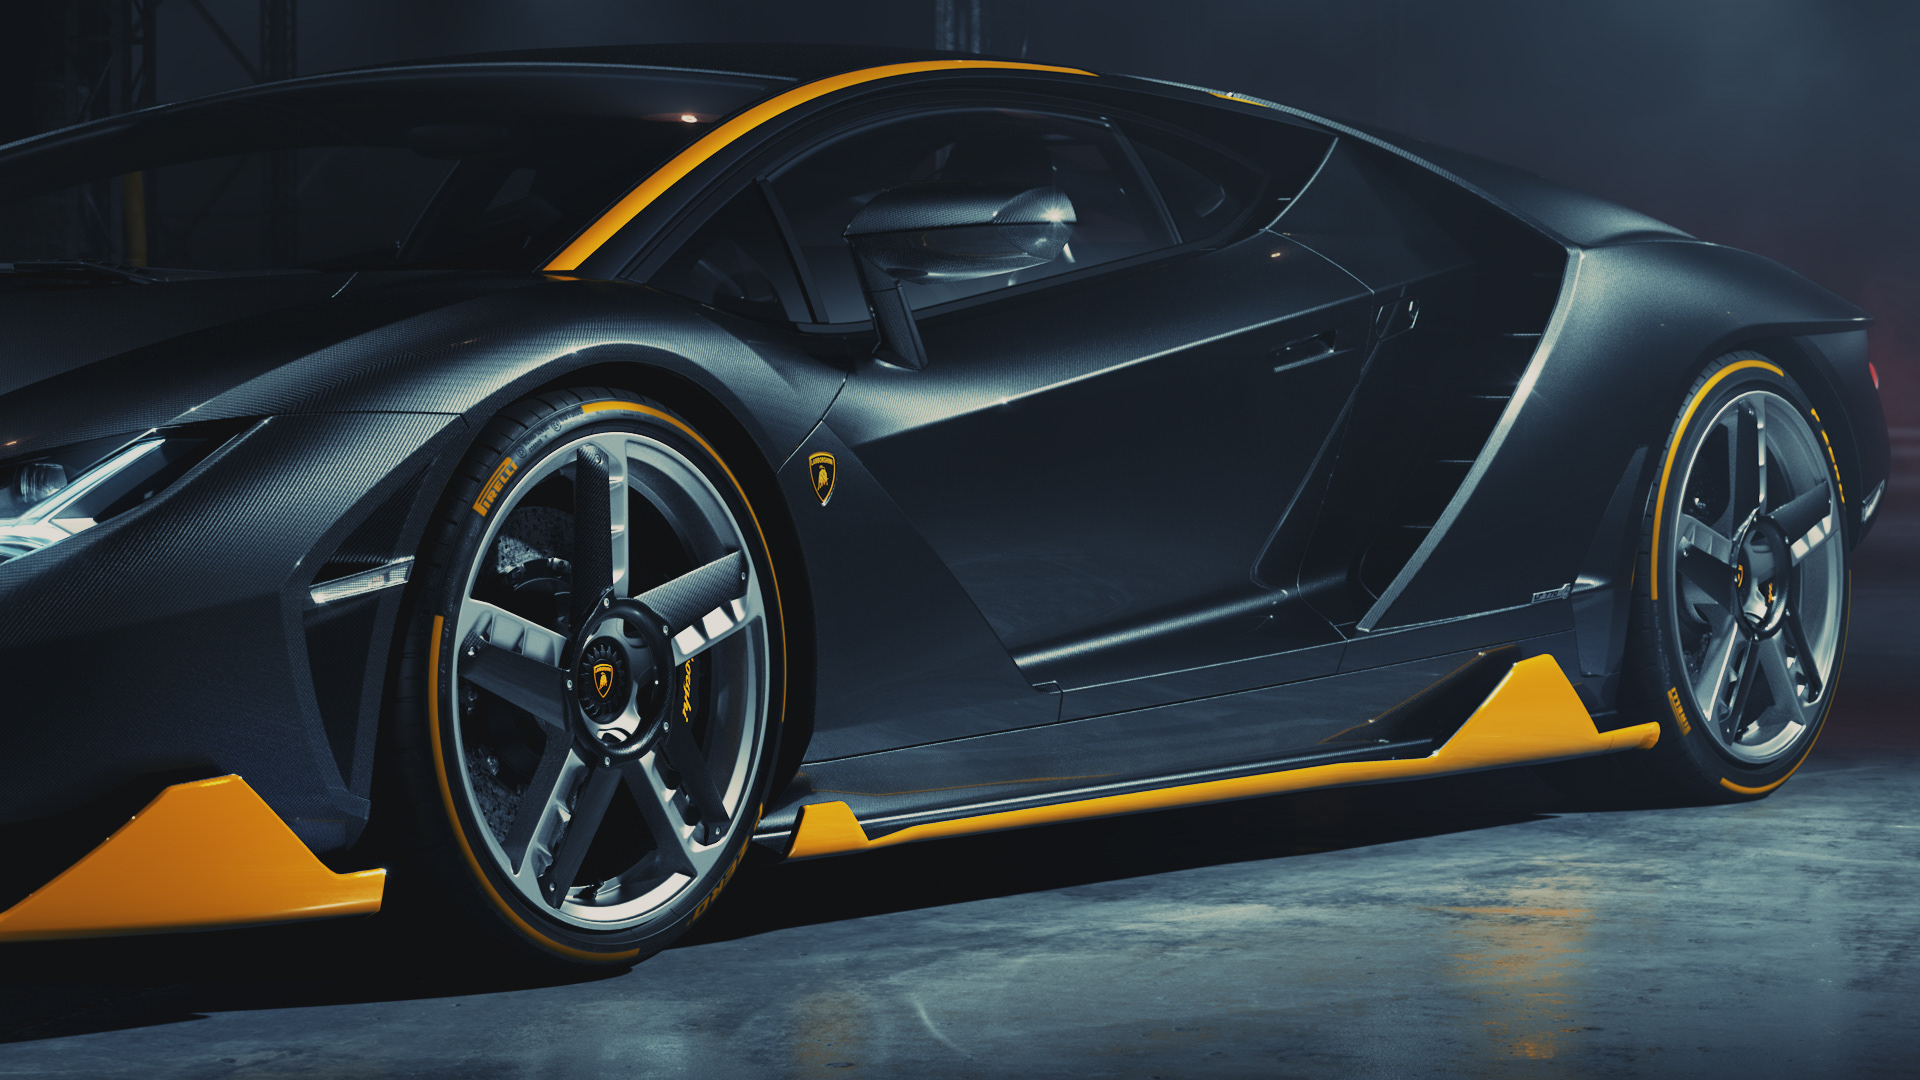 Lamborghini Centenario \u2013 Full CGI on Behance4e0ec491477621.5e32d3fdb96e0.jpg